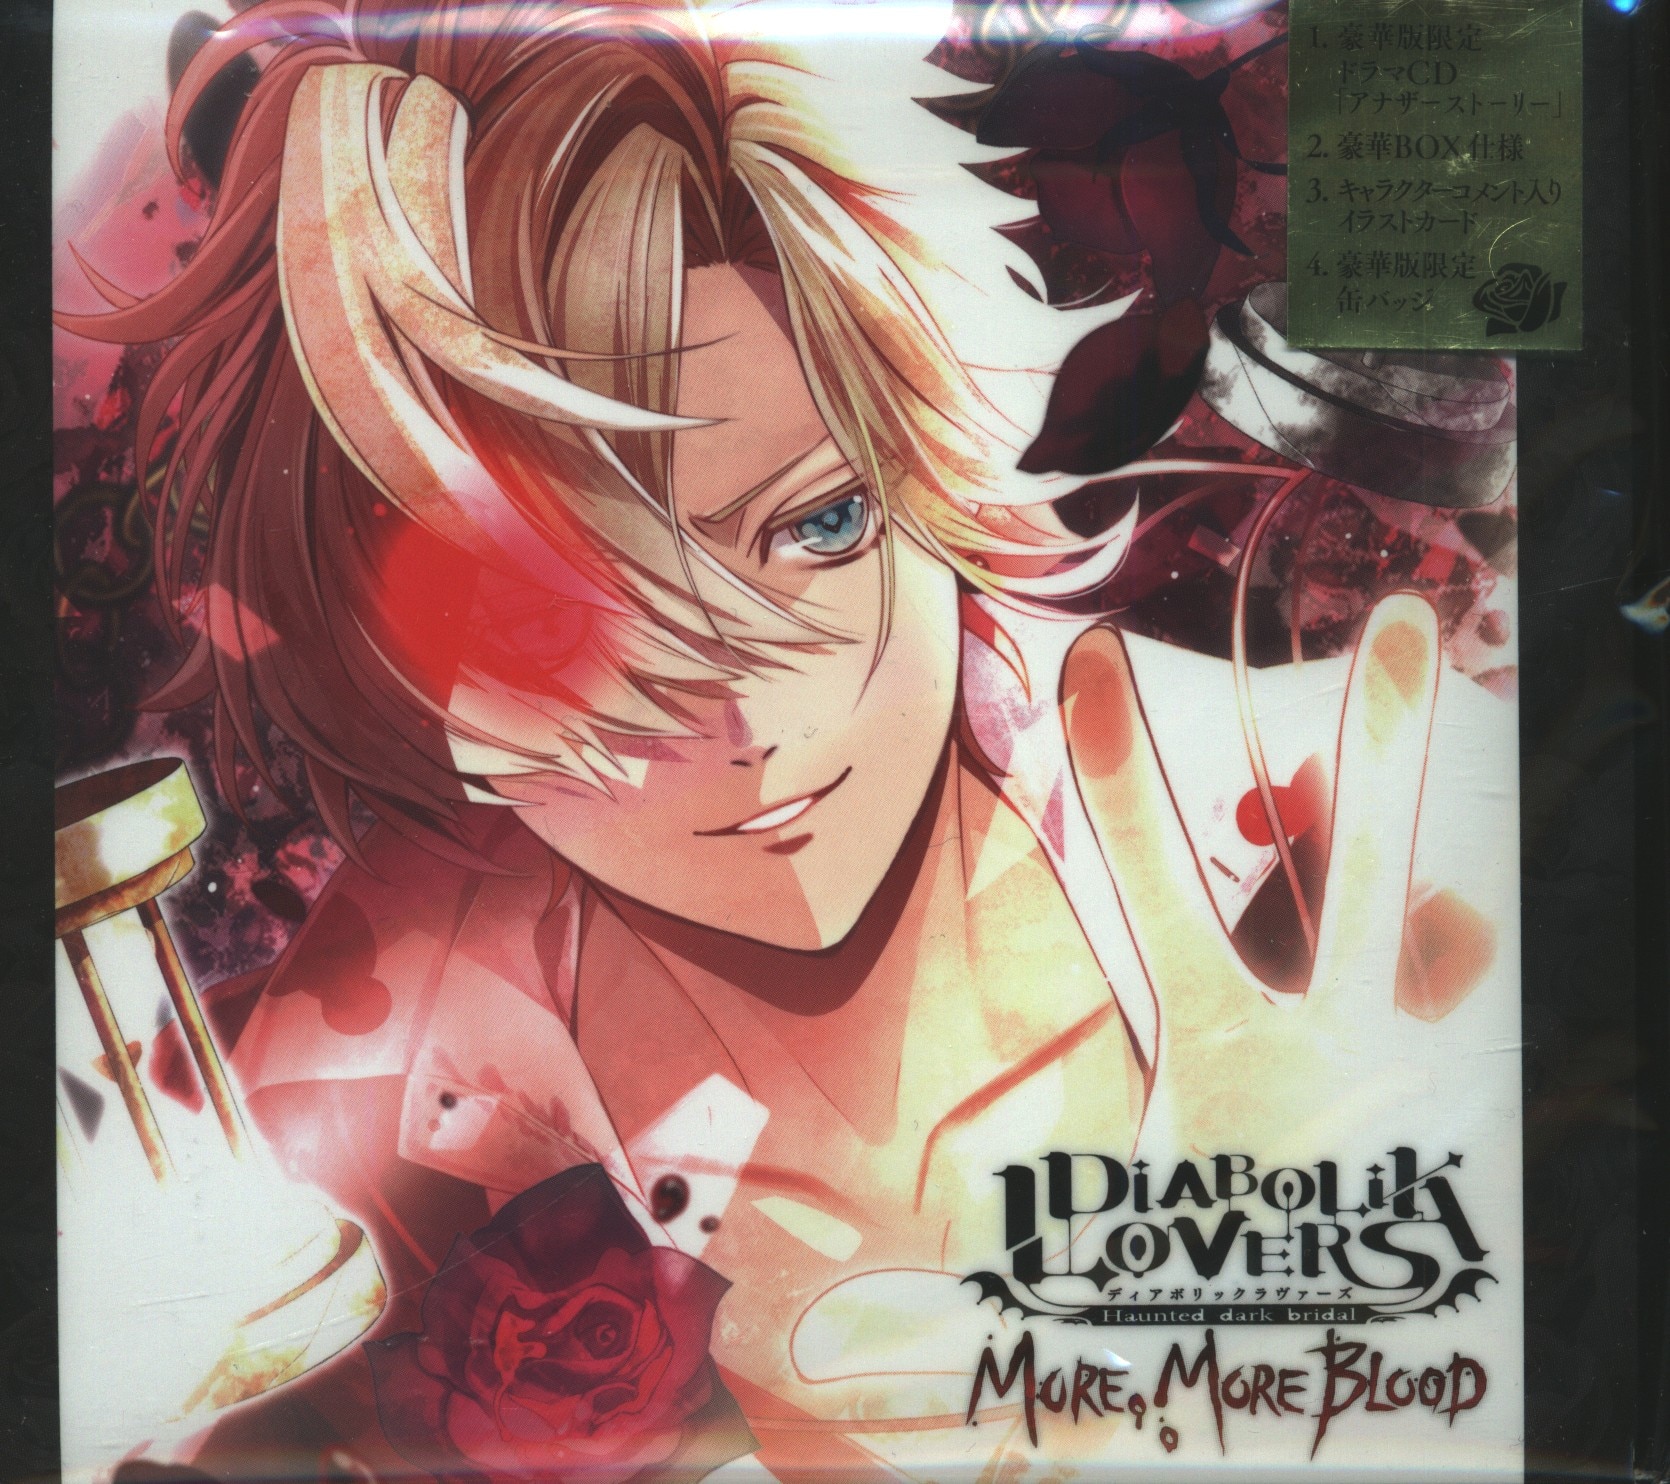 Rejet Deluxe Edition Lovers More More Diabolik Blood Kou Mukami Vol 2 Mandarake Online Shop